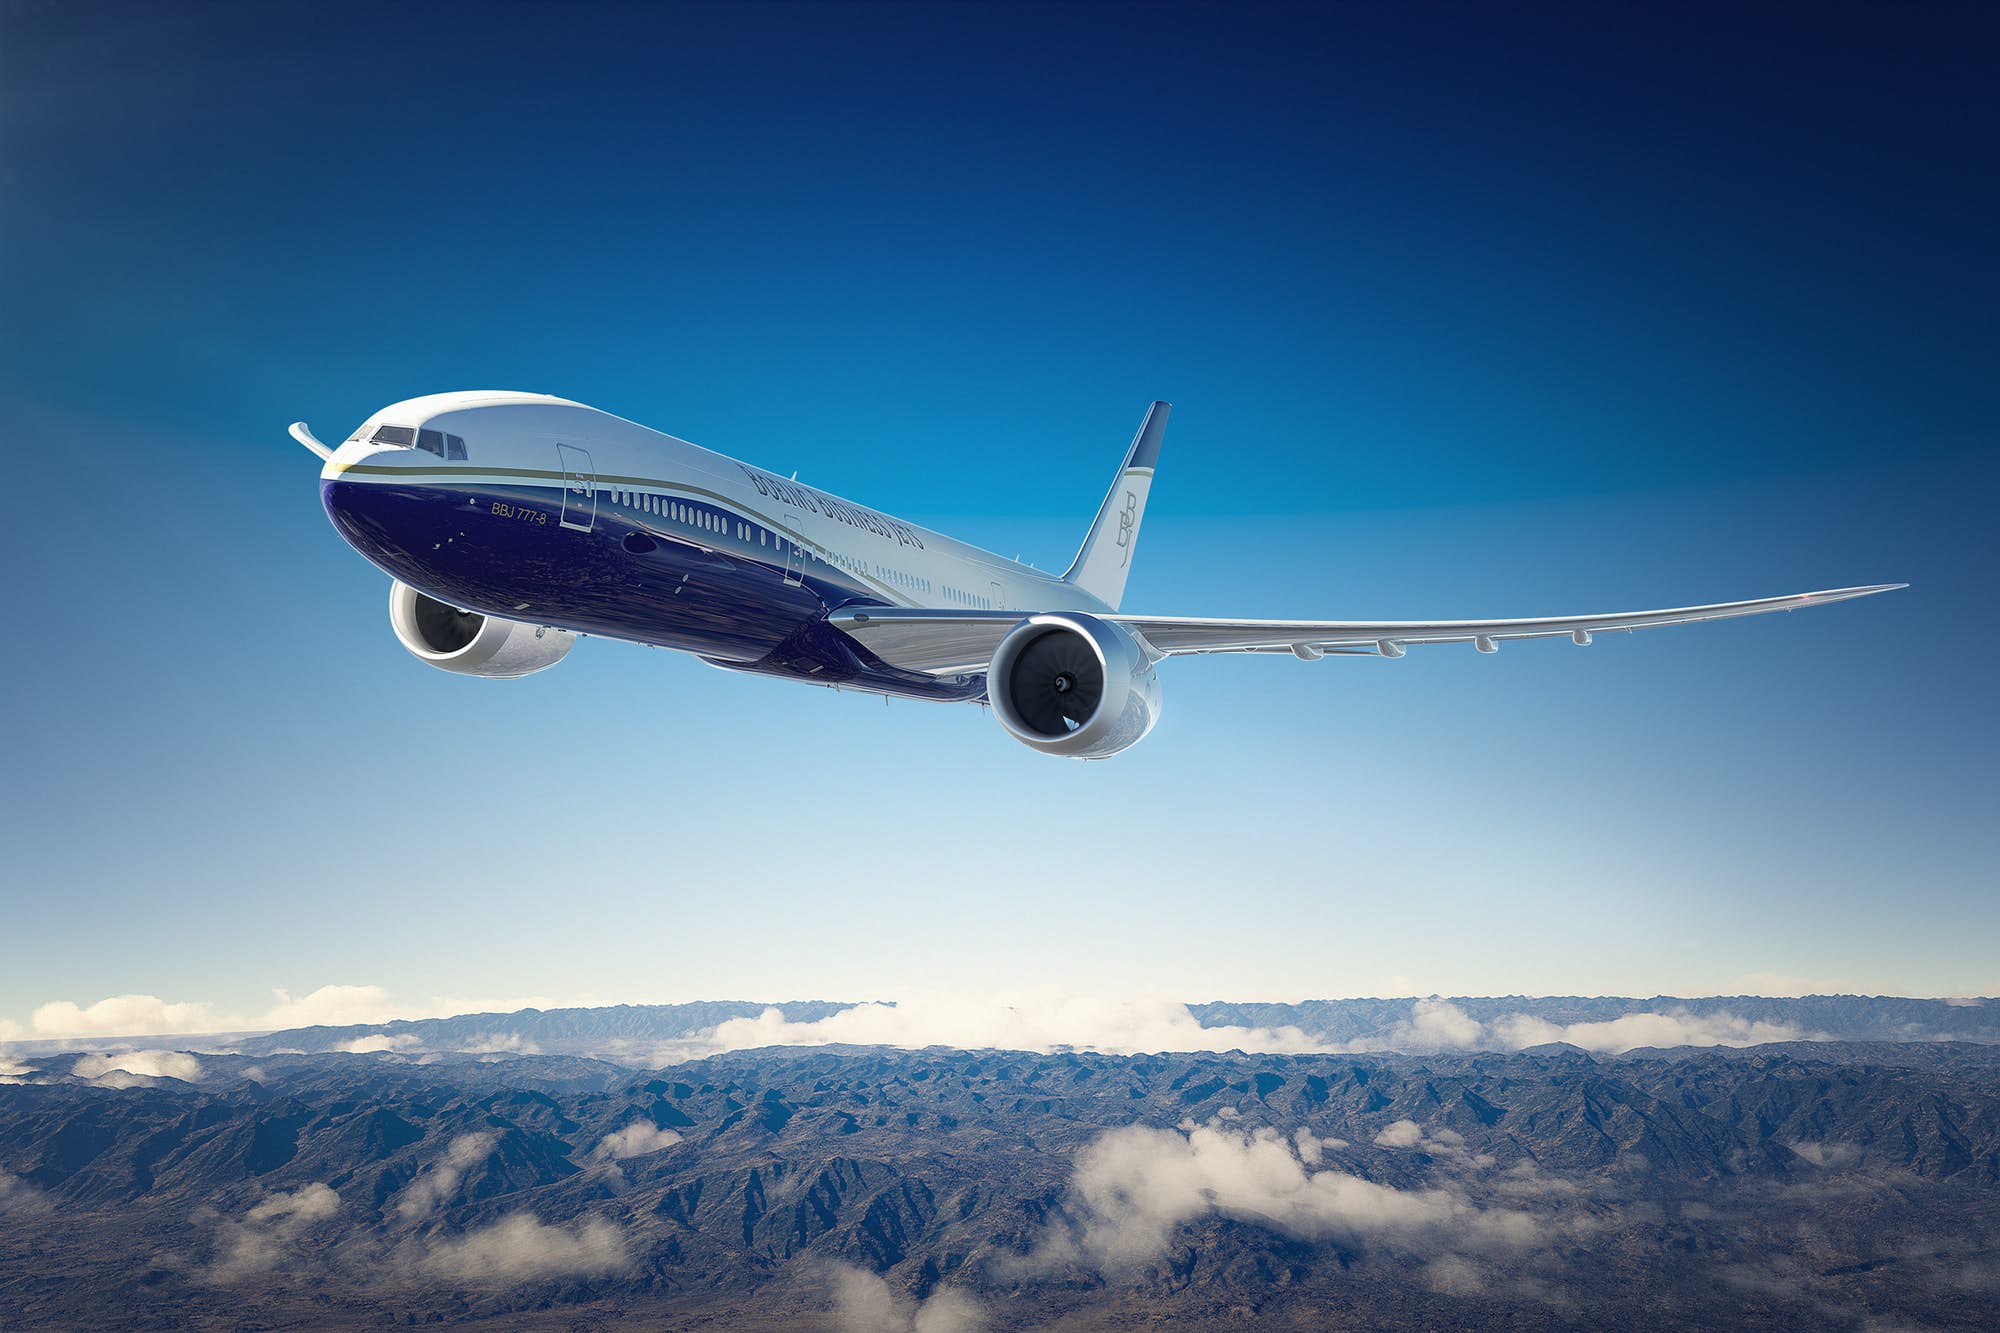 Boeing, en uzun menzile sahip BBJ 777x model özel jetleri piyasaya sürüyor